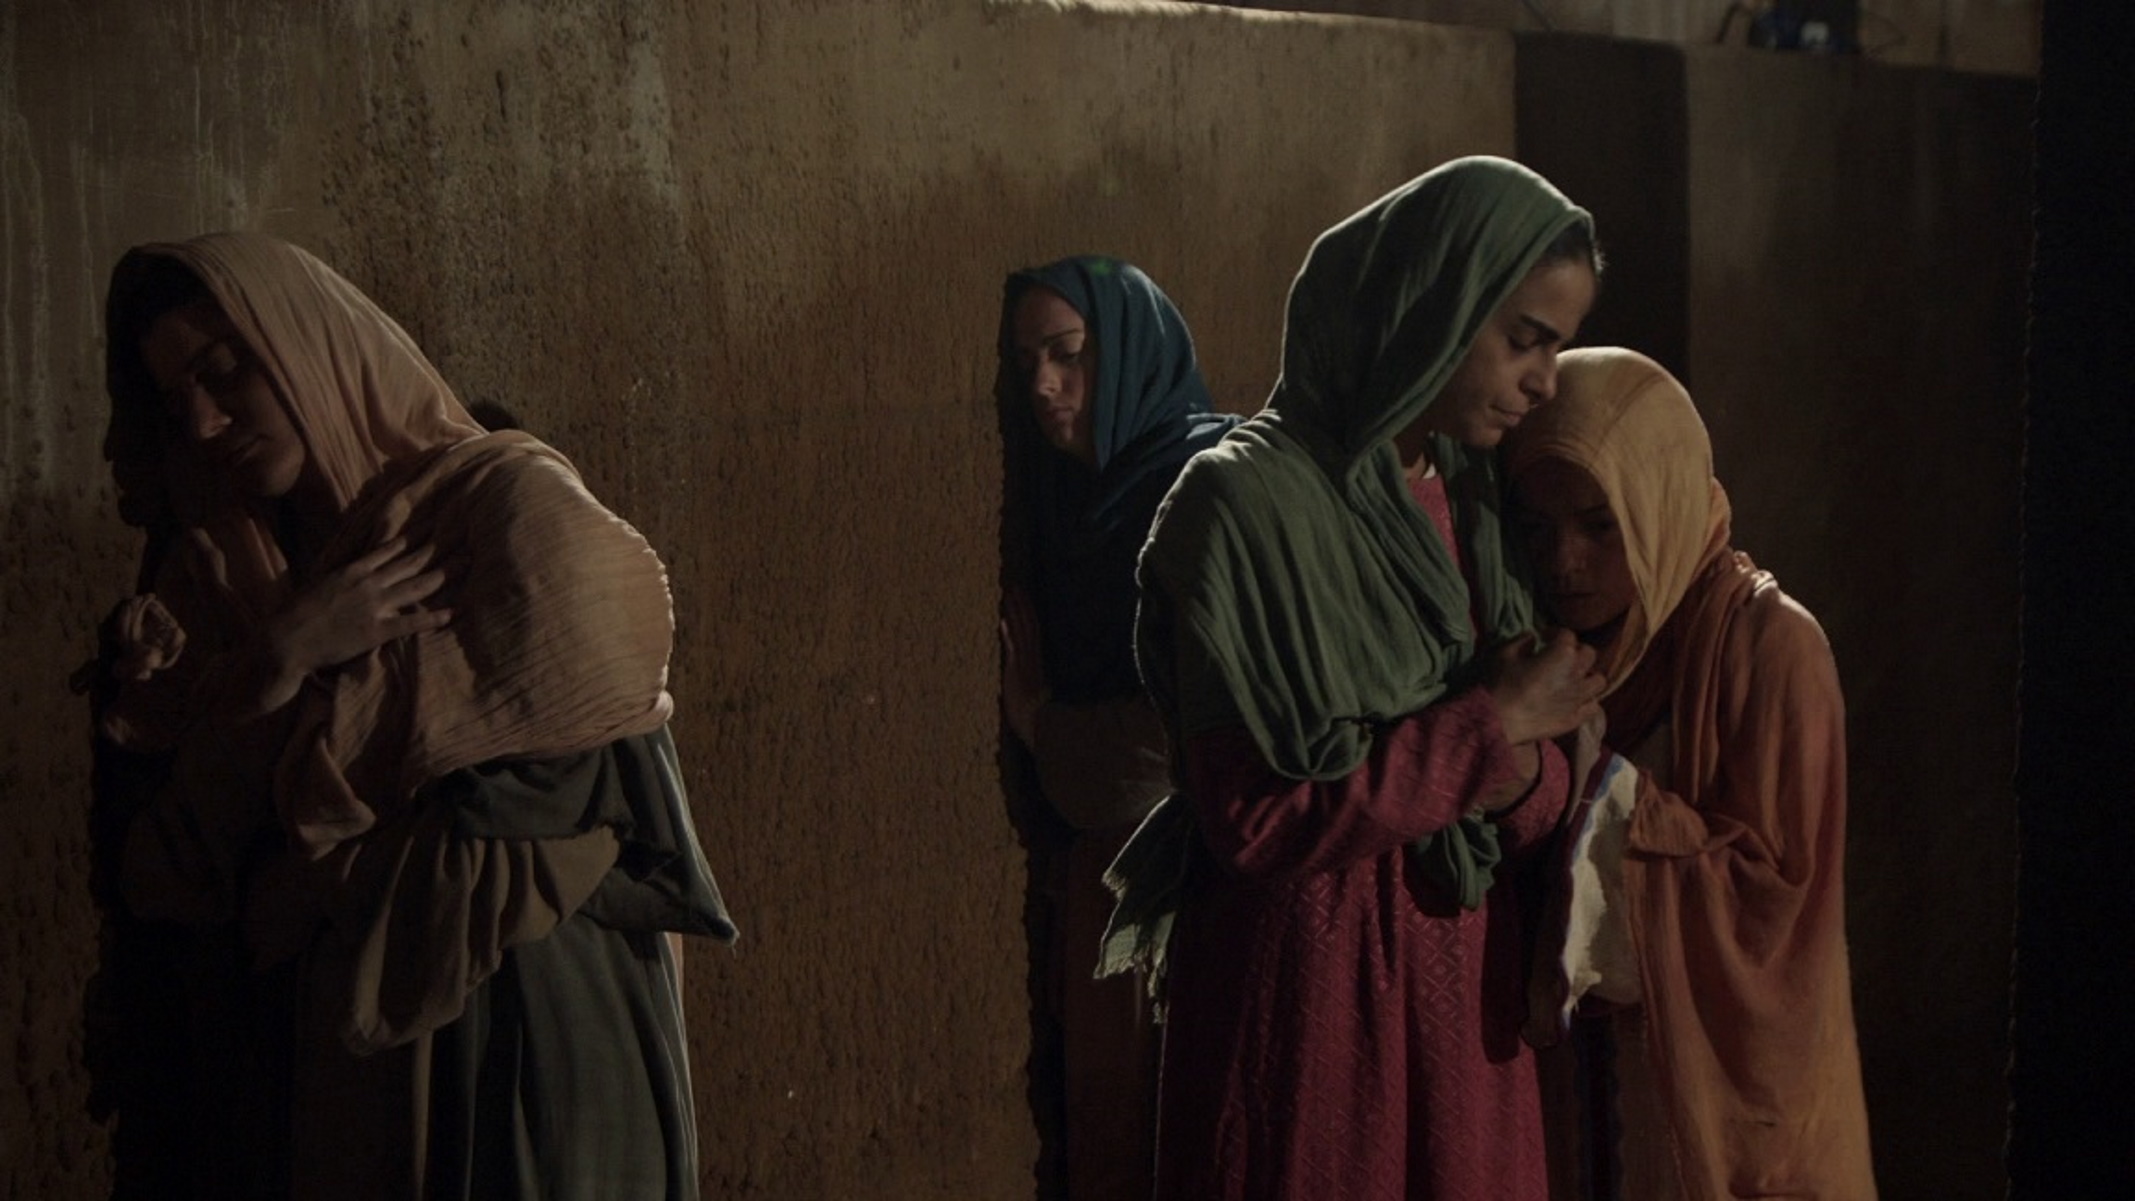 Φιλοθέη, η Αγία των Αθηνών: Σε Α’ προβολή το δραματοποιημένο ντοκιμαντέρ για το βίο και το έργο της